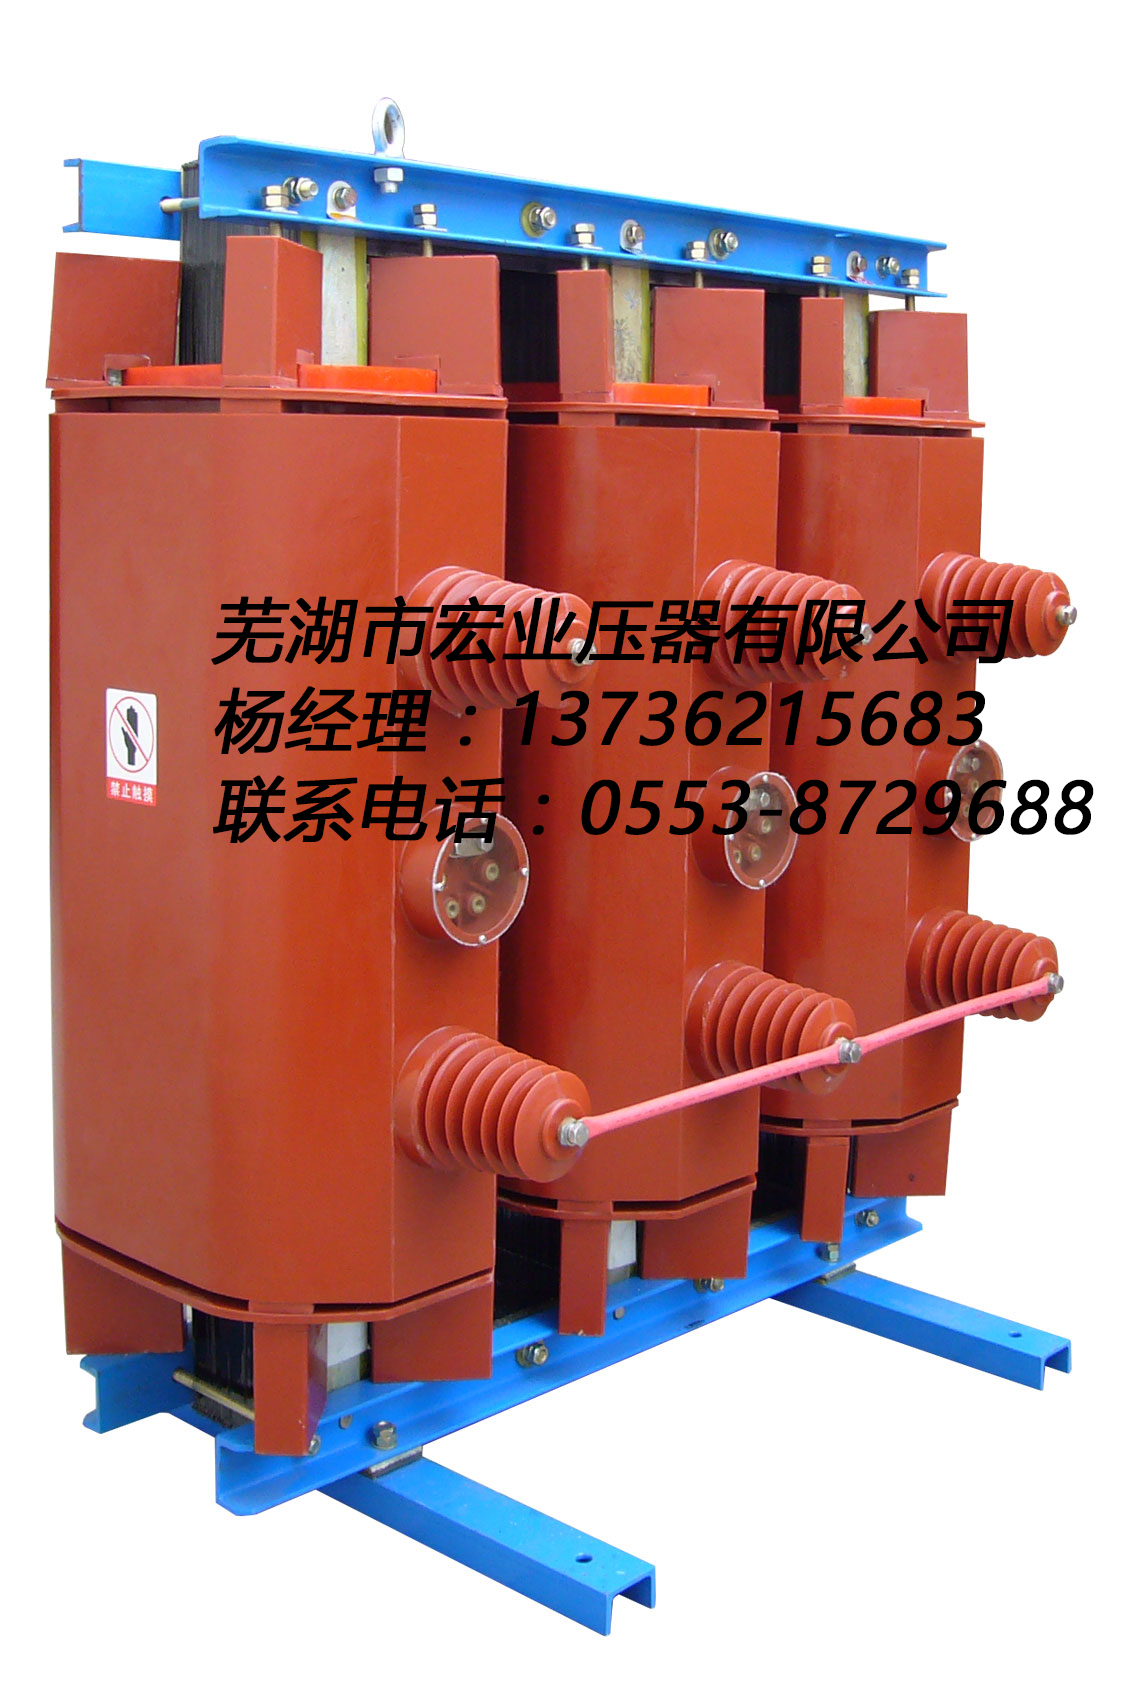 芜湖市干式变压器厂家价格厂家生产SC10-80/10.5-0.4全铜变压器 干式变压器厂家价格